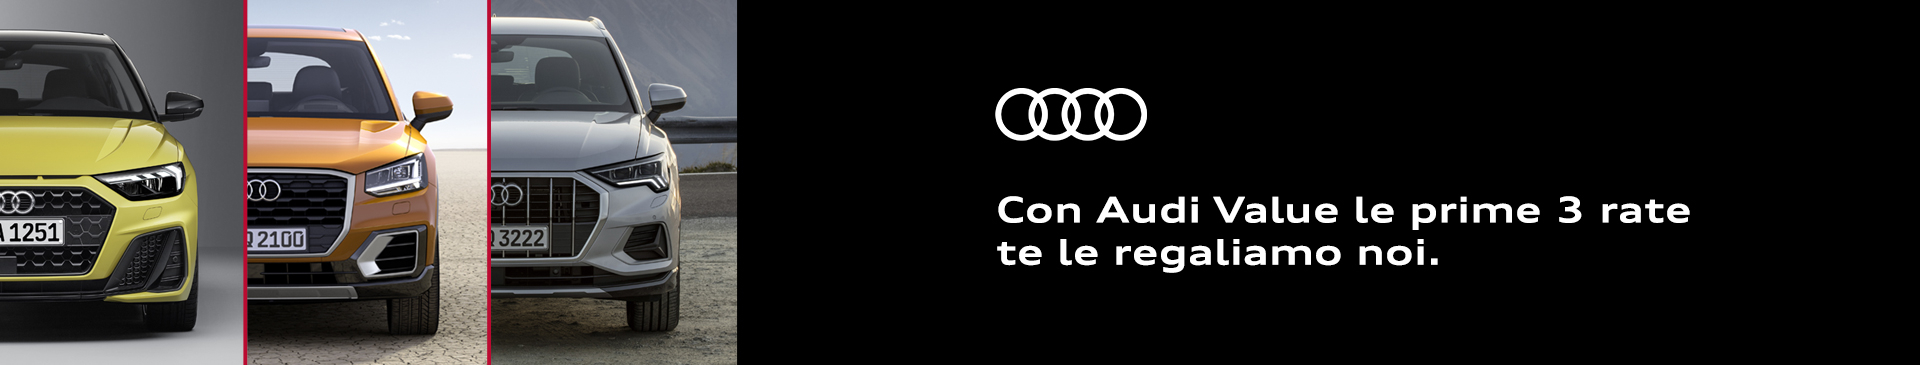 Audi Value: a giugno 3 rate sono gratis!